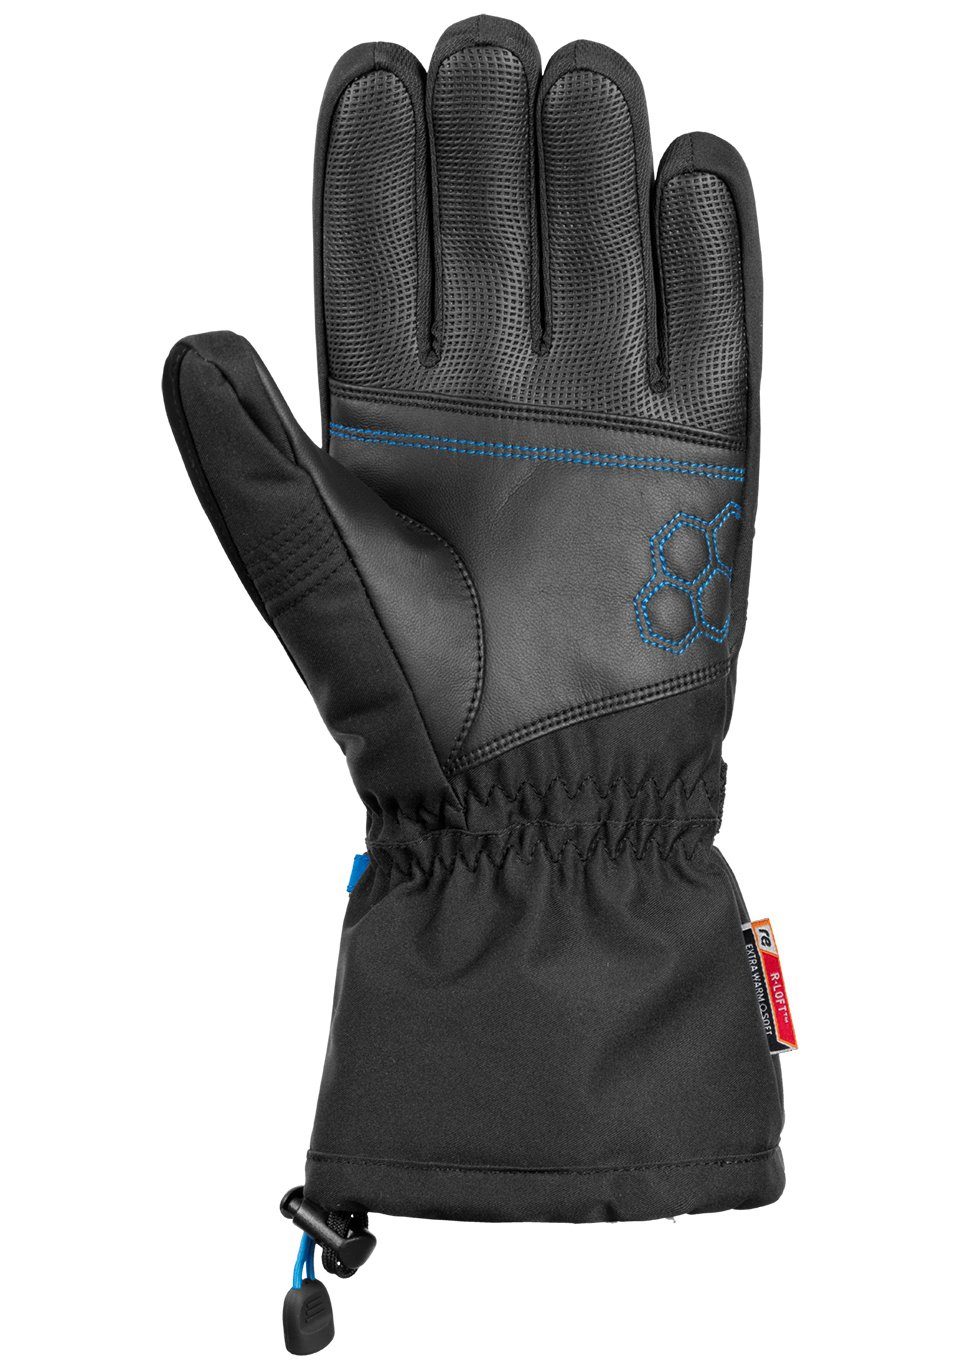 XT in blau-schwarz Design Reusch sportlichem Skihandschuhe R-TEX Connor